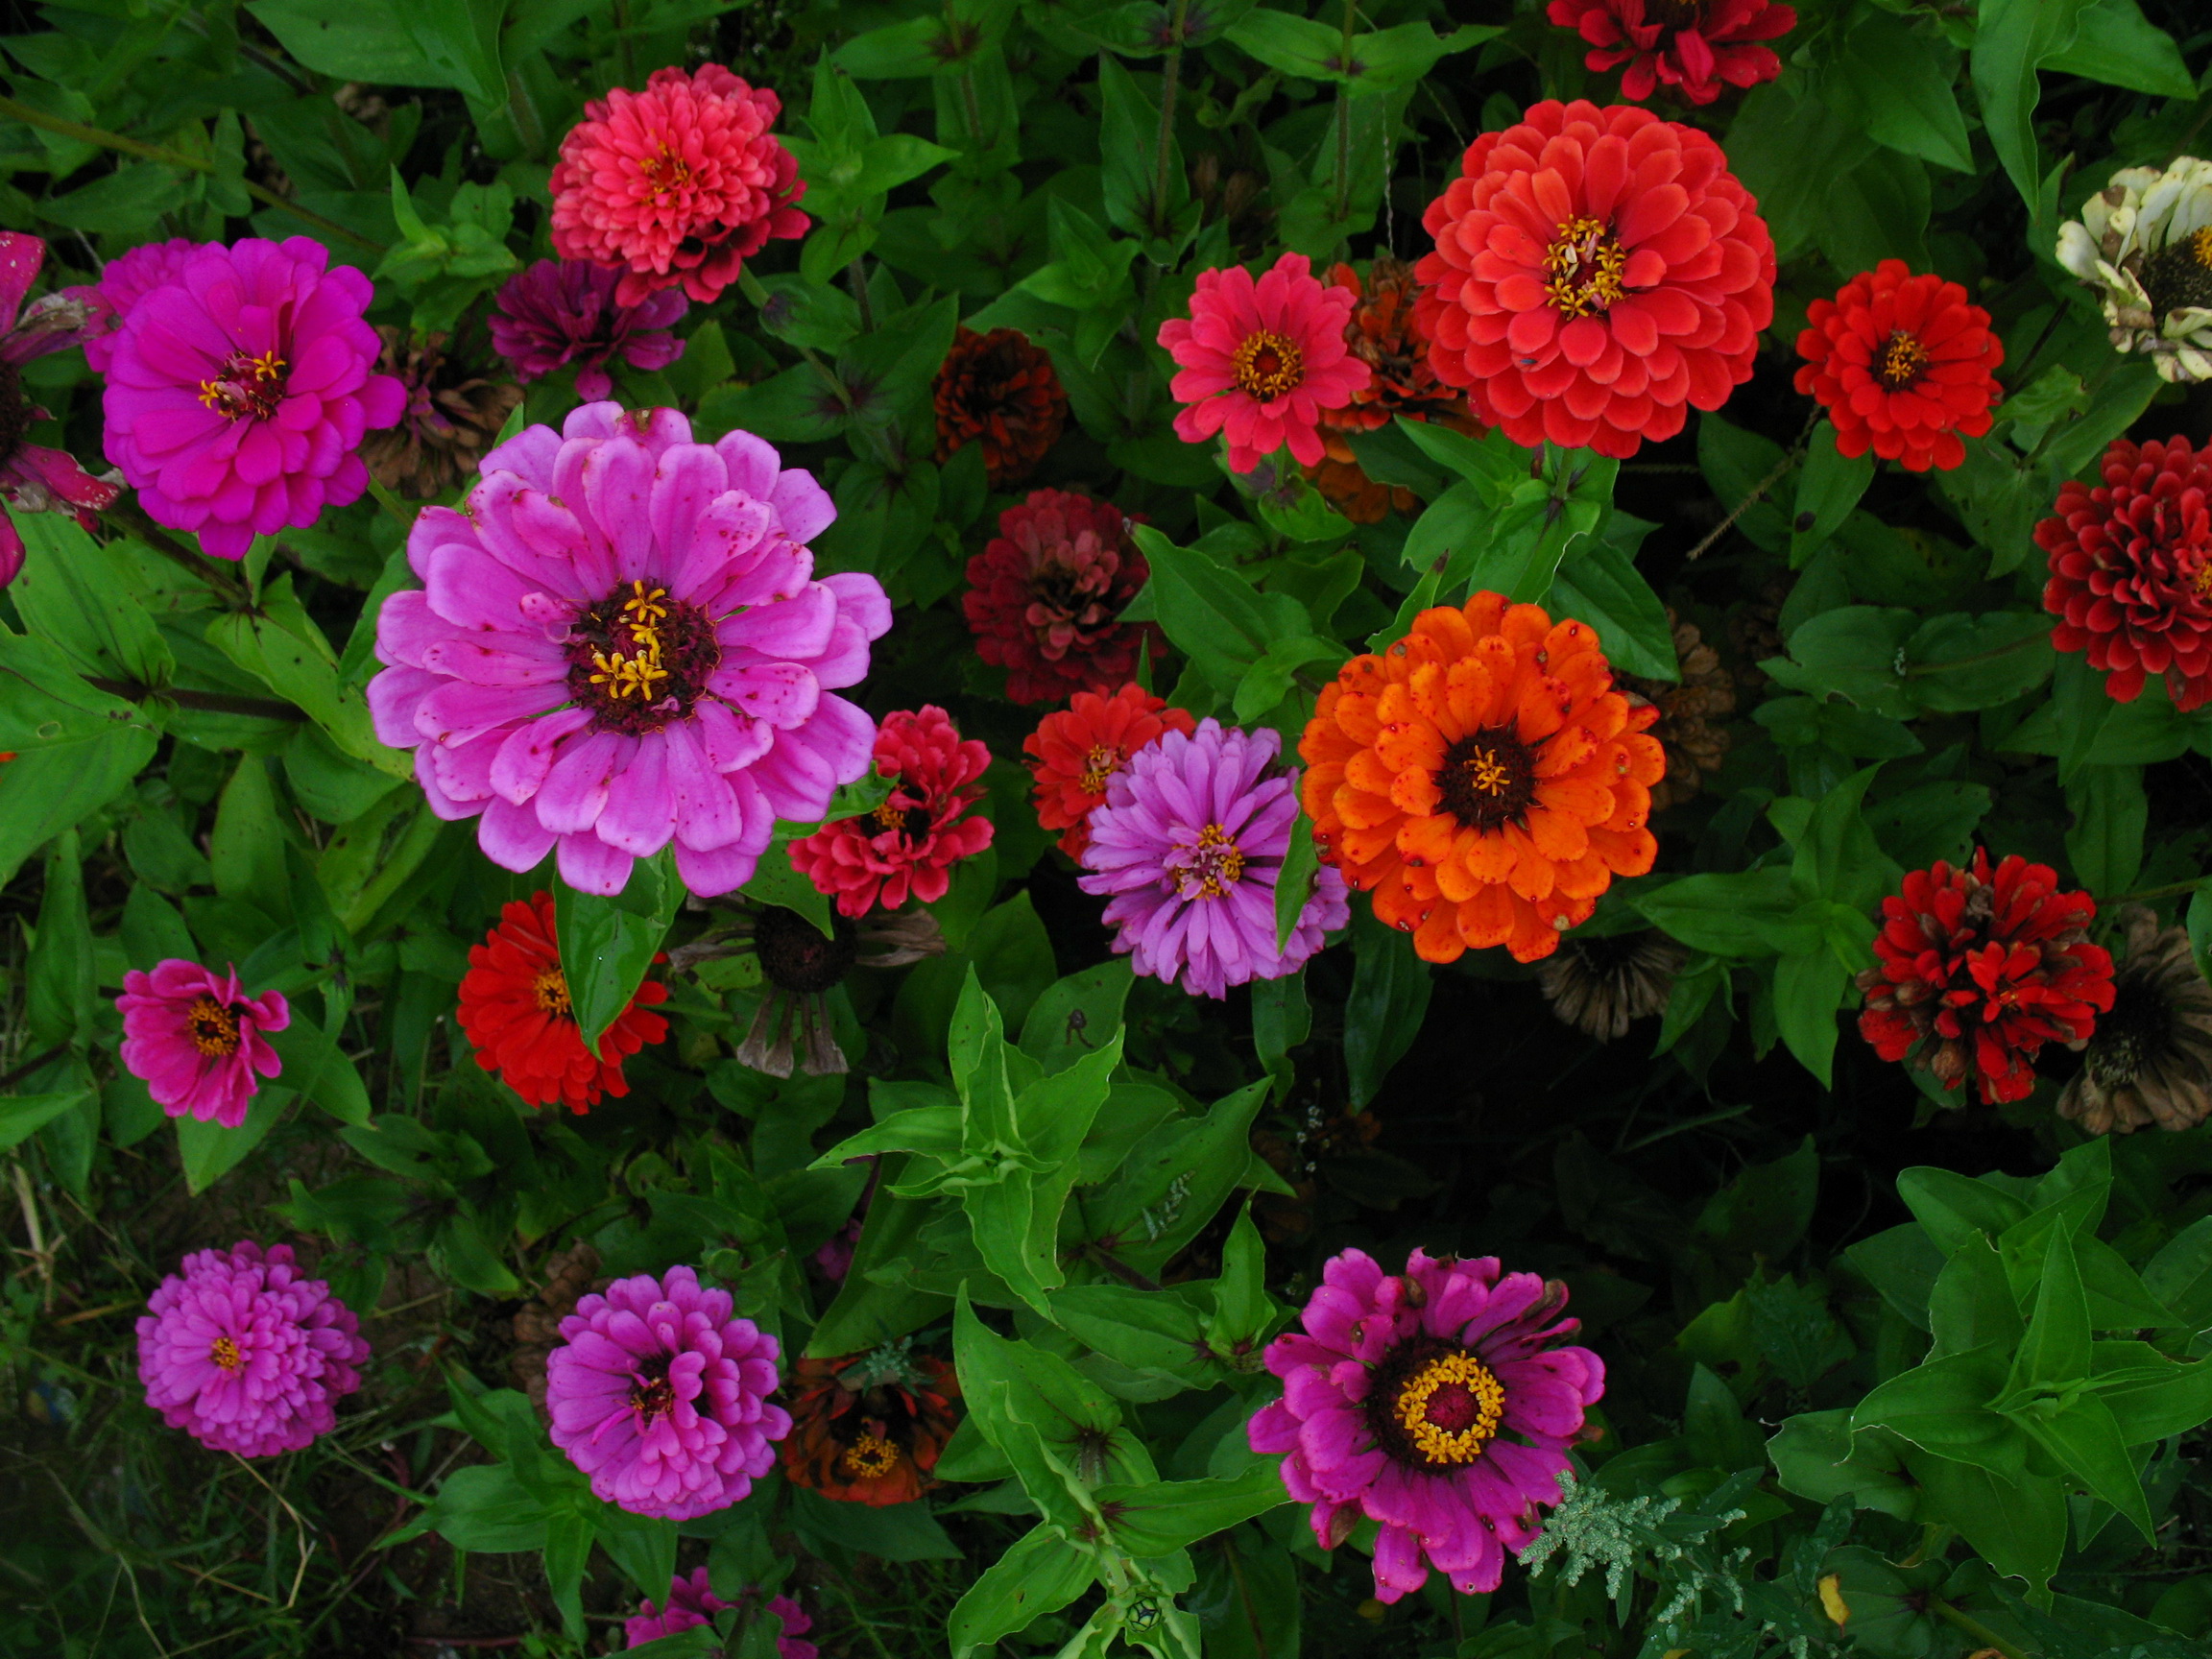 Zinnia kweken: variëteiten en foto's van bloemen